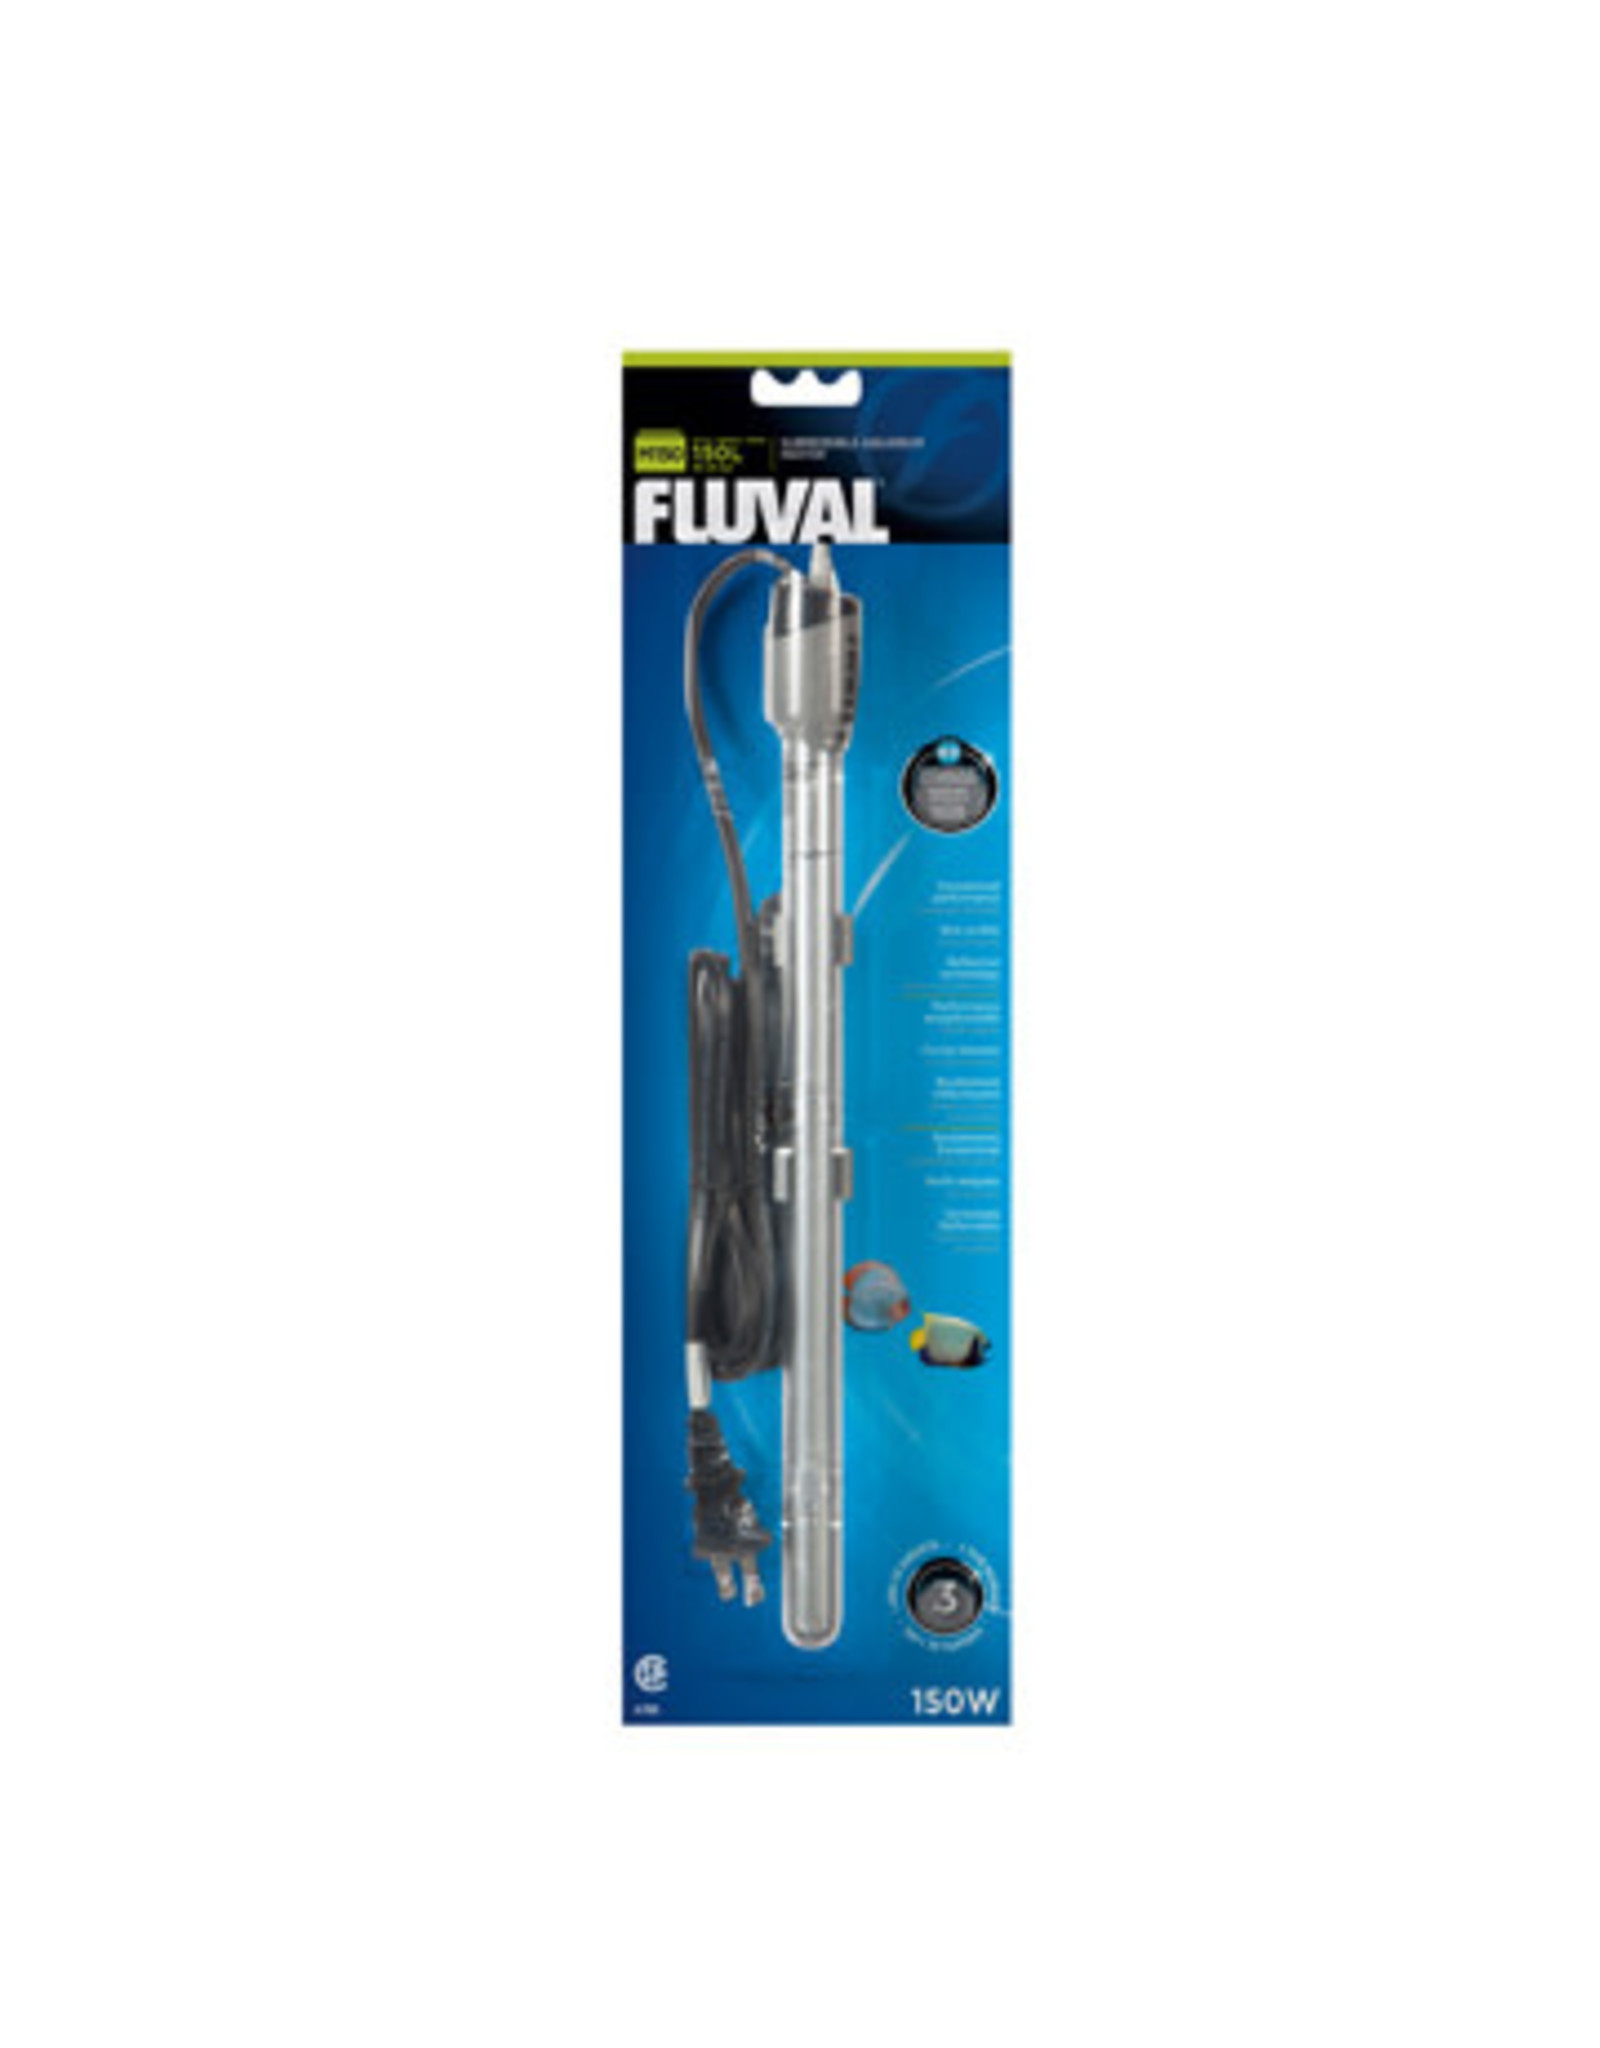 Fluval Fluval M150 Submersible Heater - 150 W